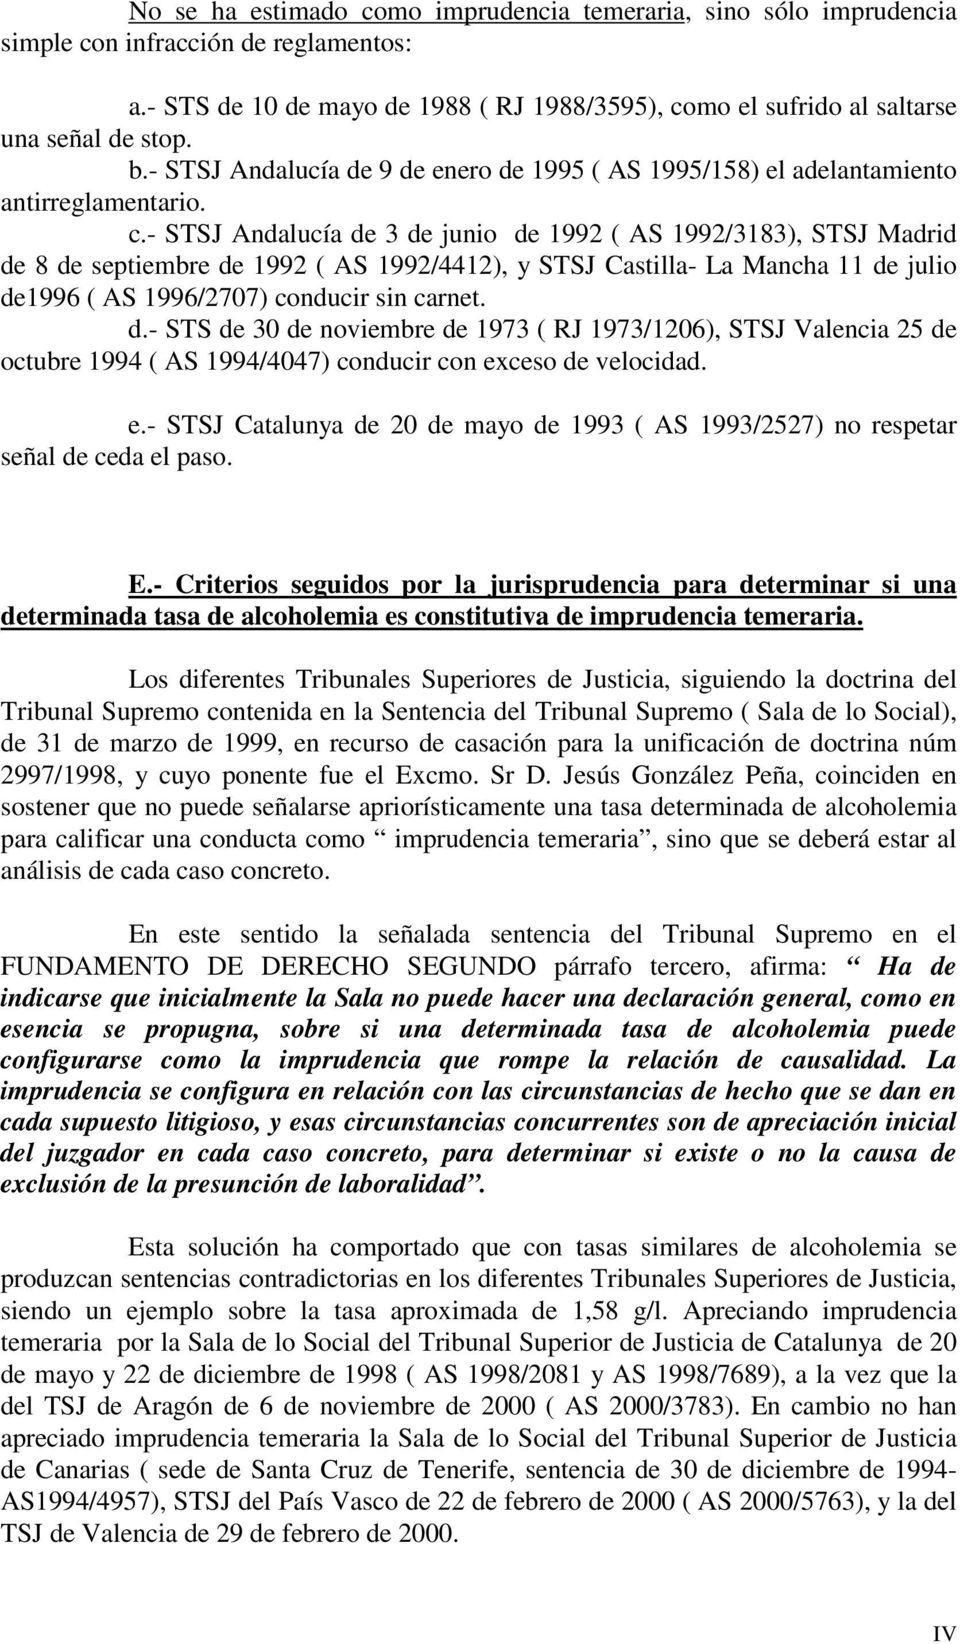 - STSJ Andalucía de 3 de junio de 1992 ( AS 1992/3183), STSJ Madrid de 8 de septiembre de 1992 ( AS 1992/4412), y STSJ Castilla- La Mancha 11 de julio de1996 ( AS 1996/2707) conducir sin carnet. d.- STS de 30 de noviembre de 1973 ( RJ 1973/1206), STSJ Valencia 25 de octubre 1994 ( AS 1994/4047) conducir con exceso de velocidad.